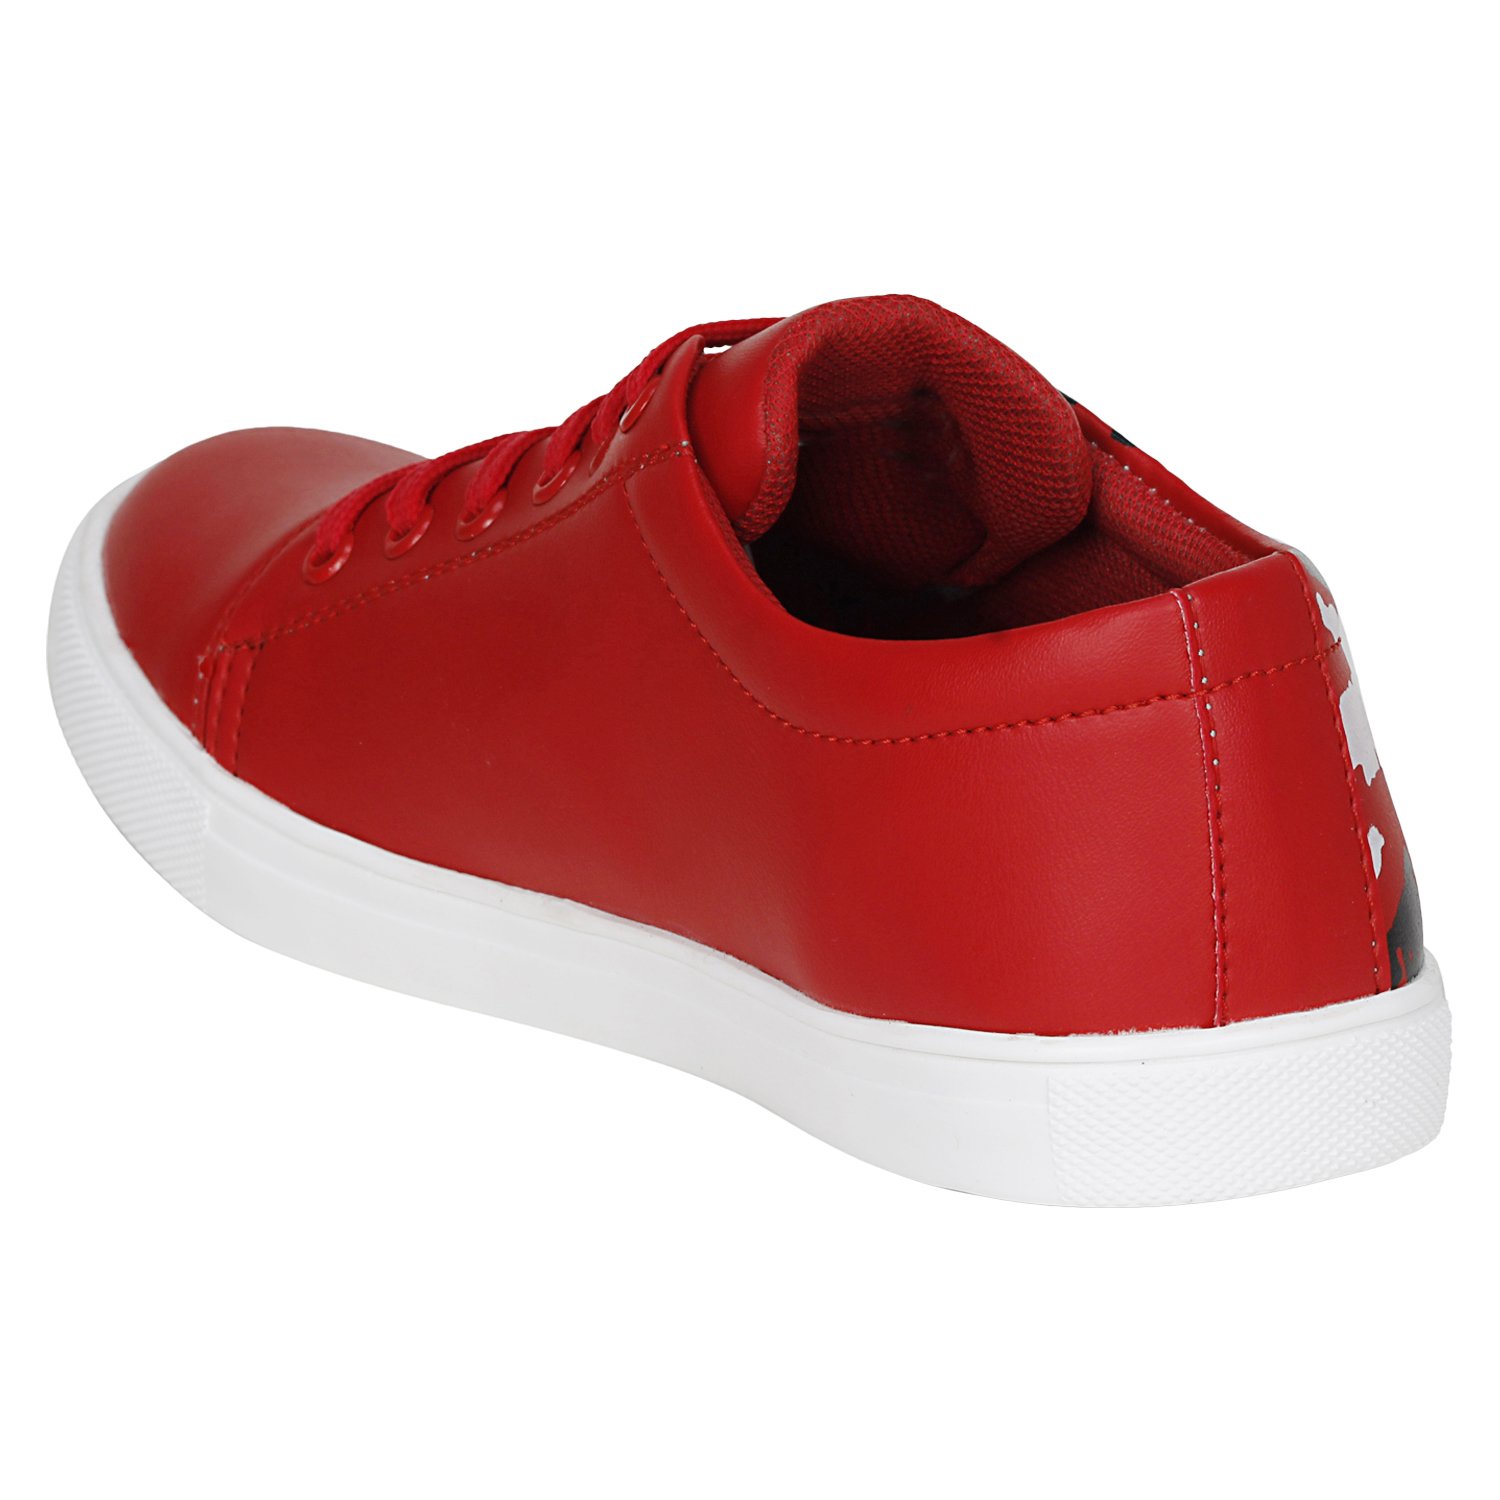 Kraasa Men’s Sneakers Red Synthetic 10